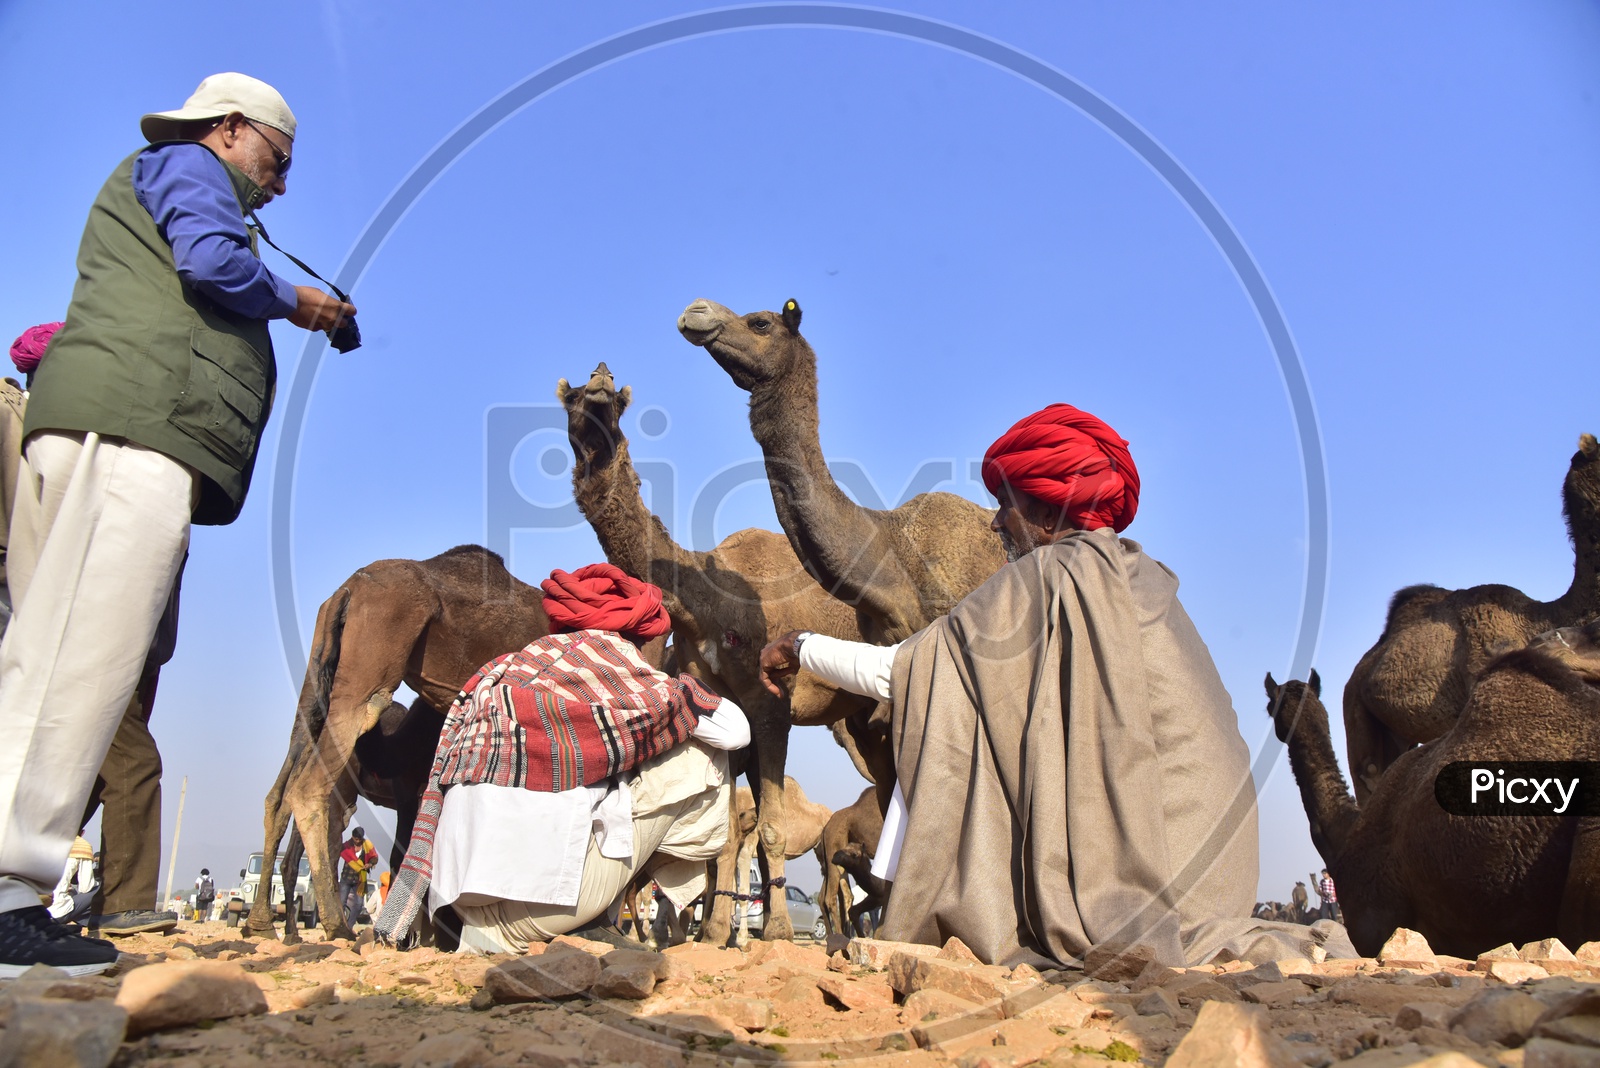 Rajasthani Men in Traditional Attire at Pushkar Camel Fair